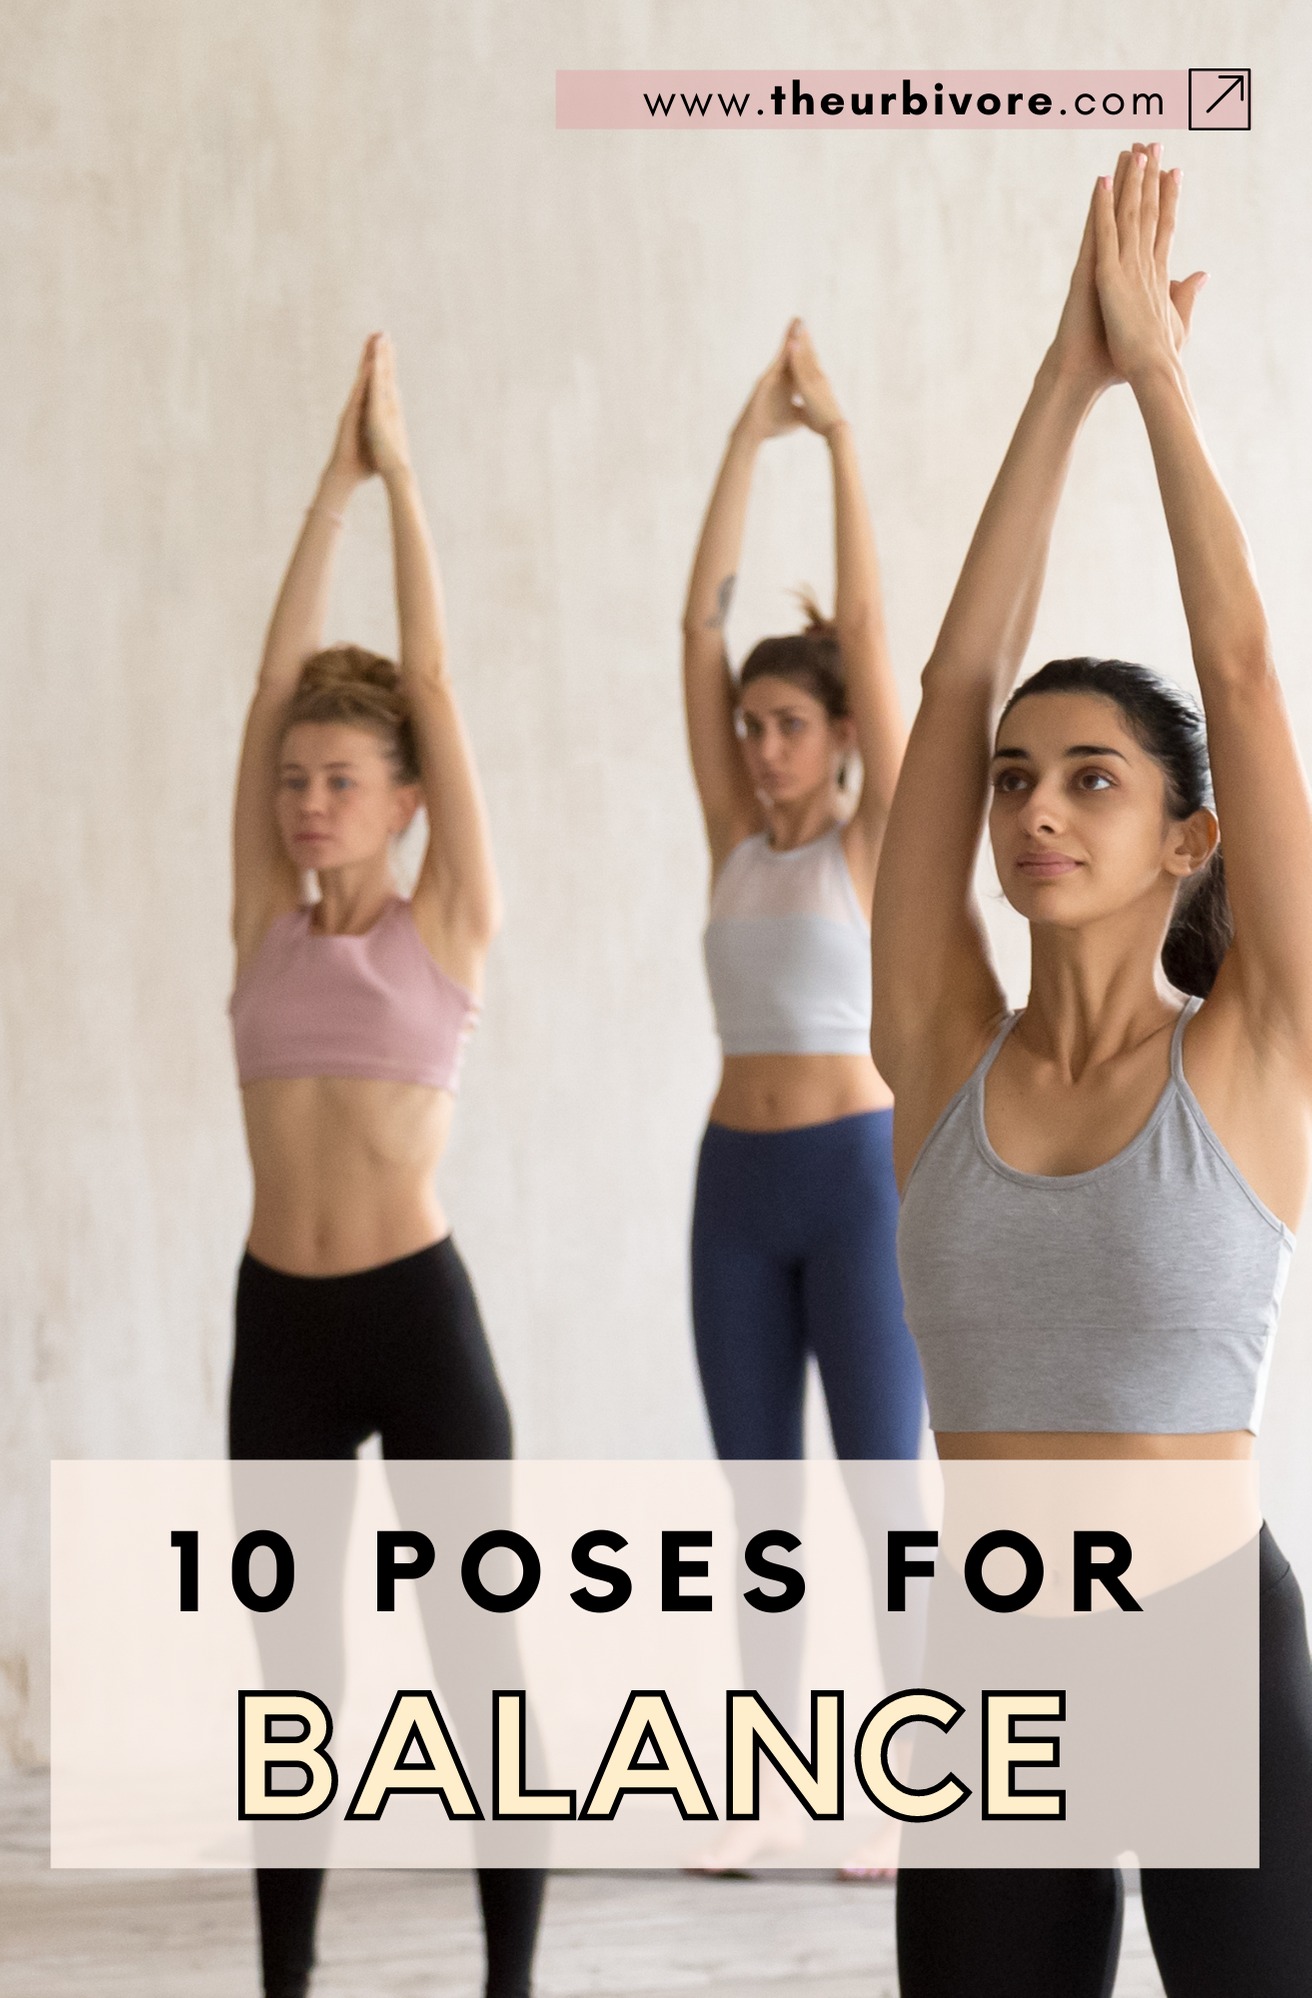 10 योगासन जो आपके शरीर को एक महीने बदल देंगे | 10 Yoga Poses That'll Change  Your Body - YouTube